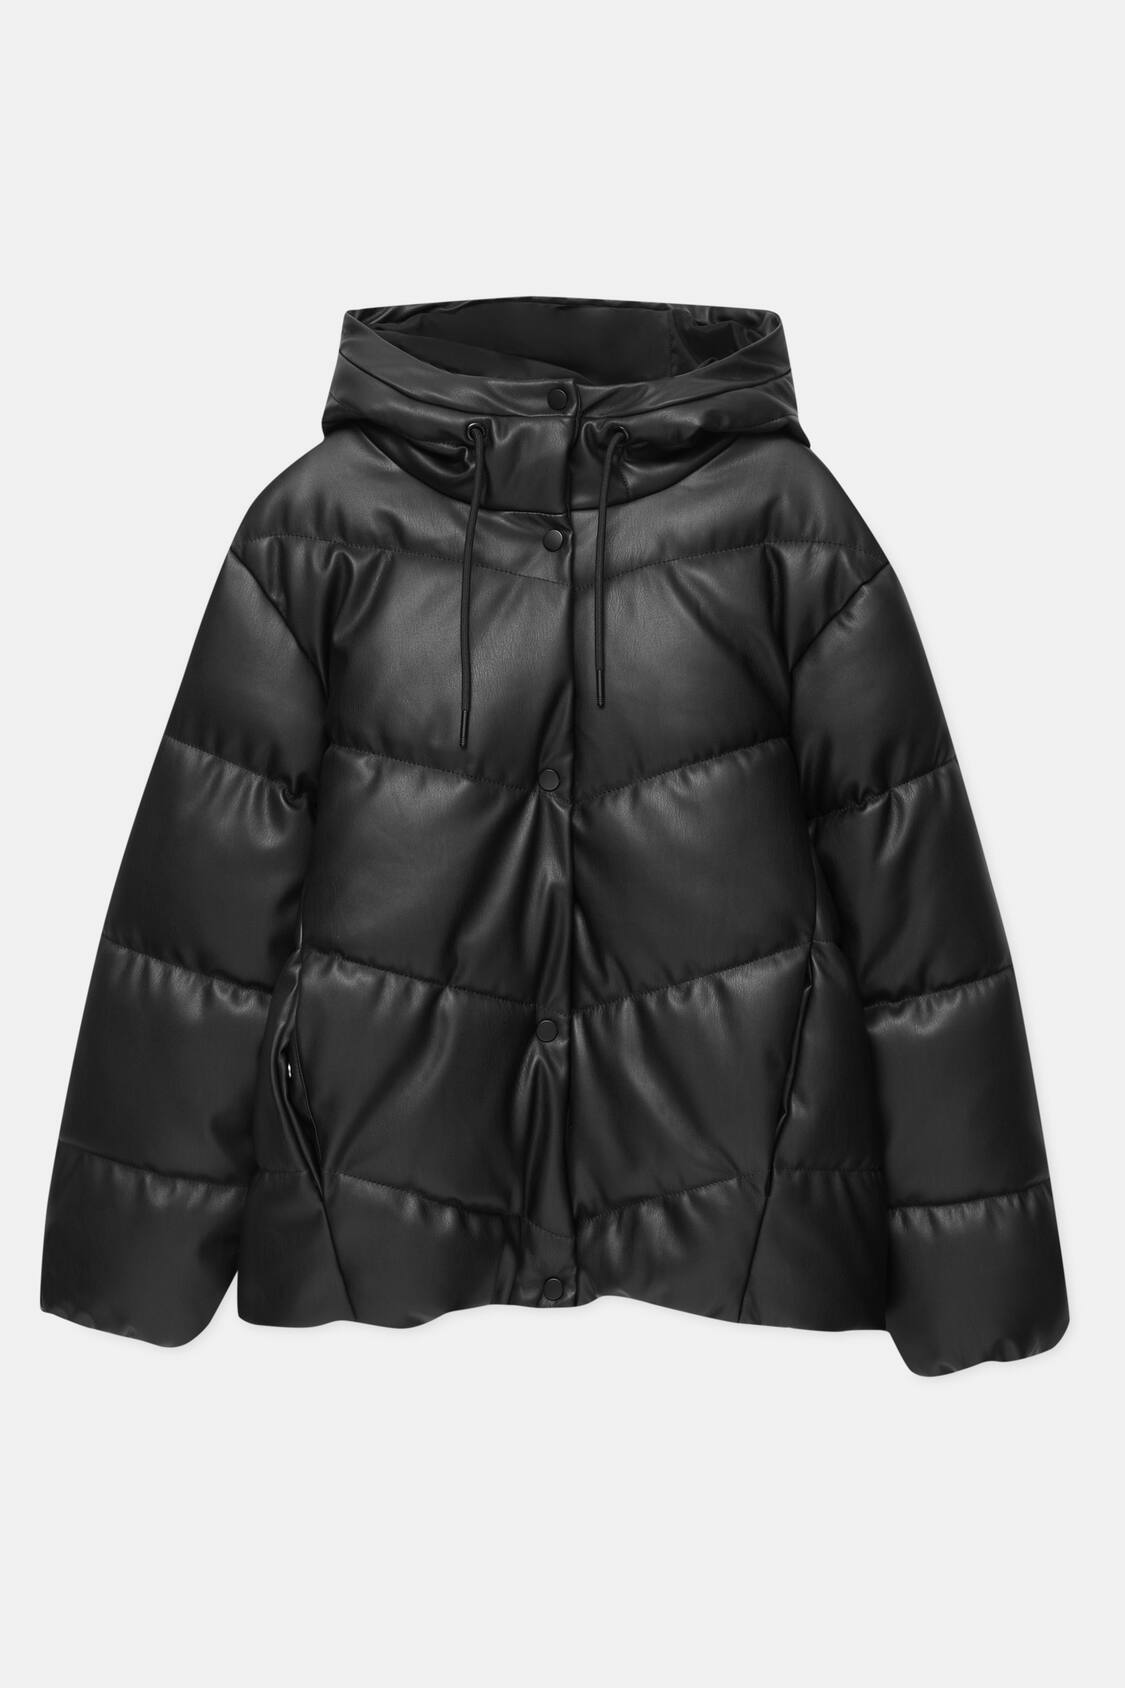 Pull&Bear Women's' Black Faux Leather Puffer Jacket